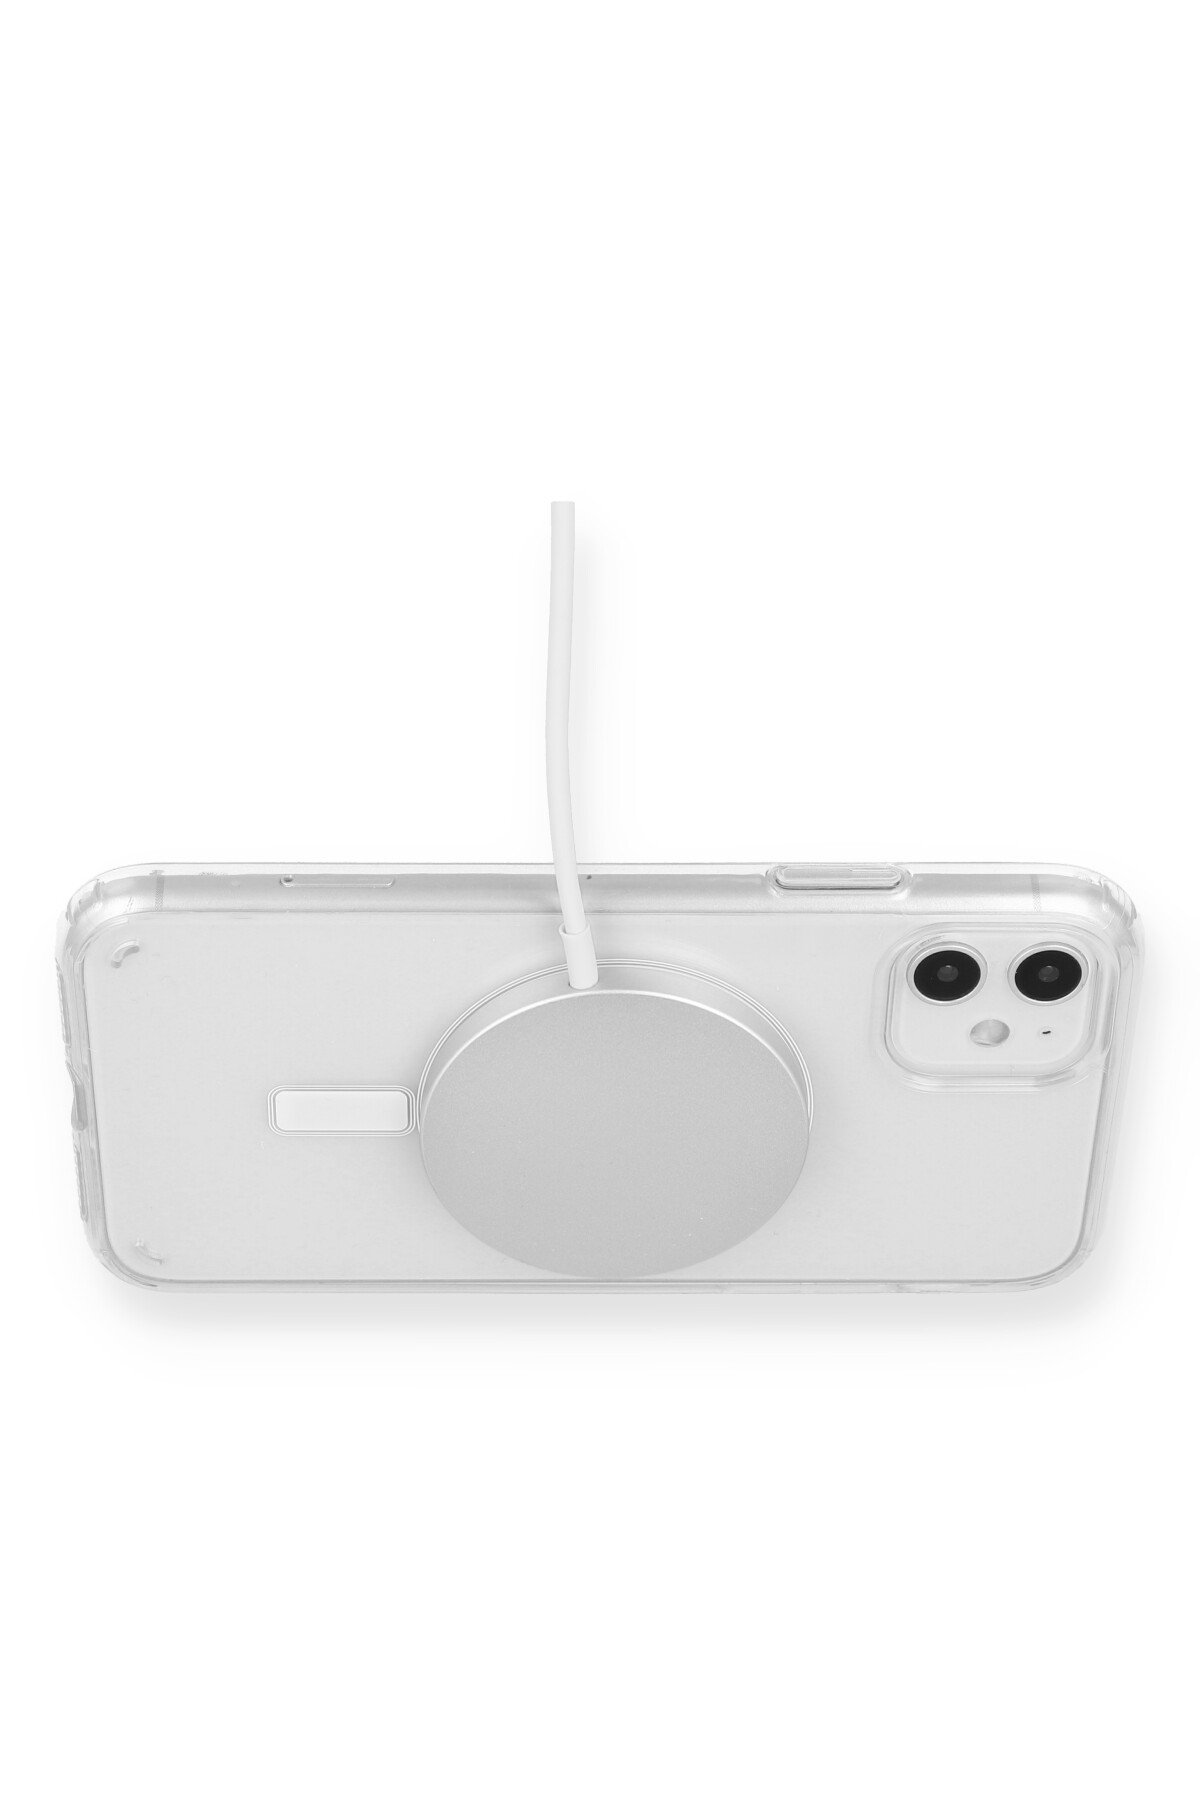 Newface iPhone 12 Kılıf Liva Lens Silikon - Kırmızı